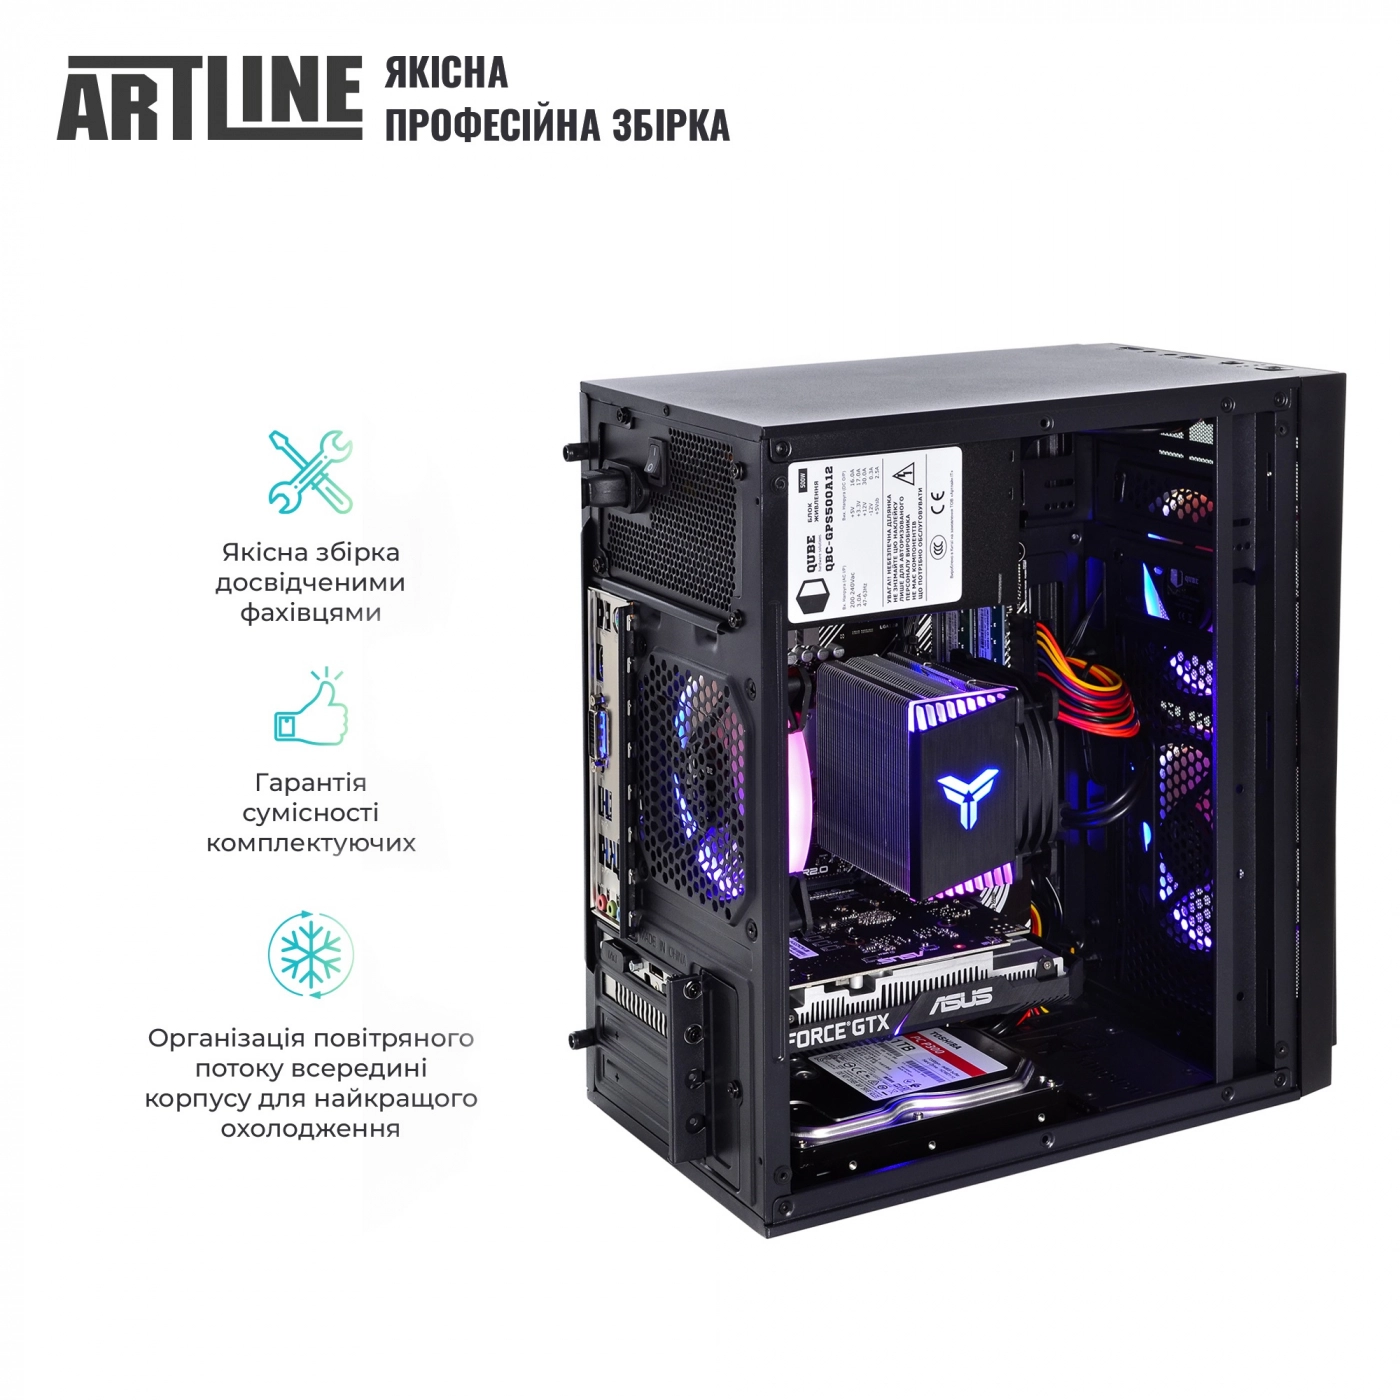 Купить Компьютер ARTLINE Gaming X46v37 - фото 5